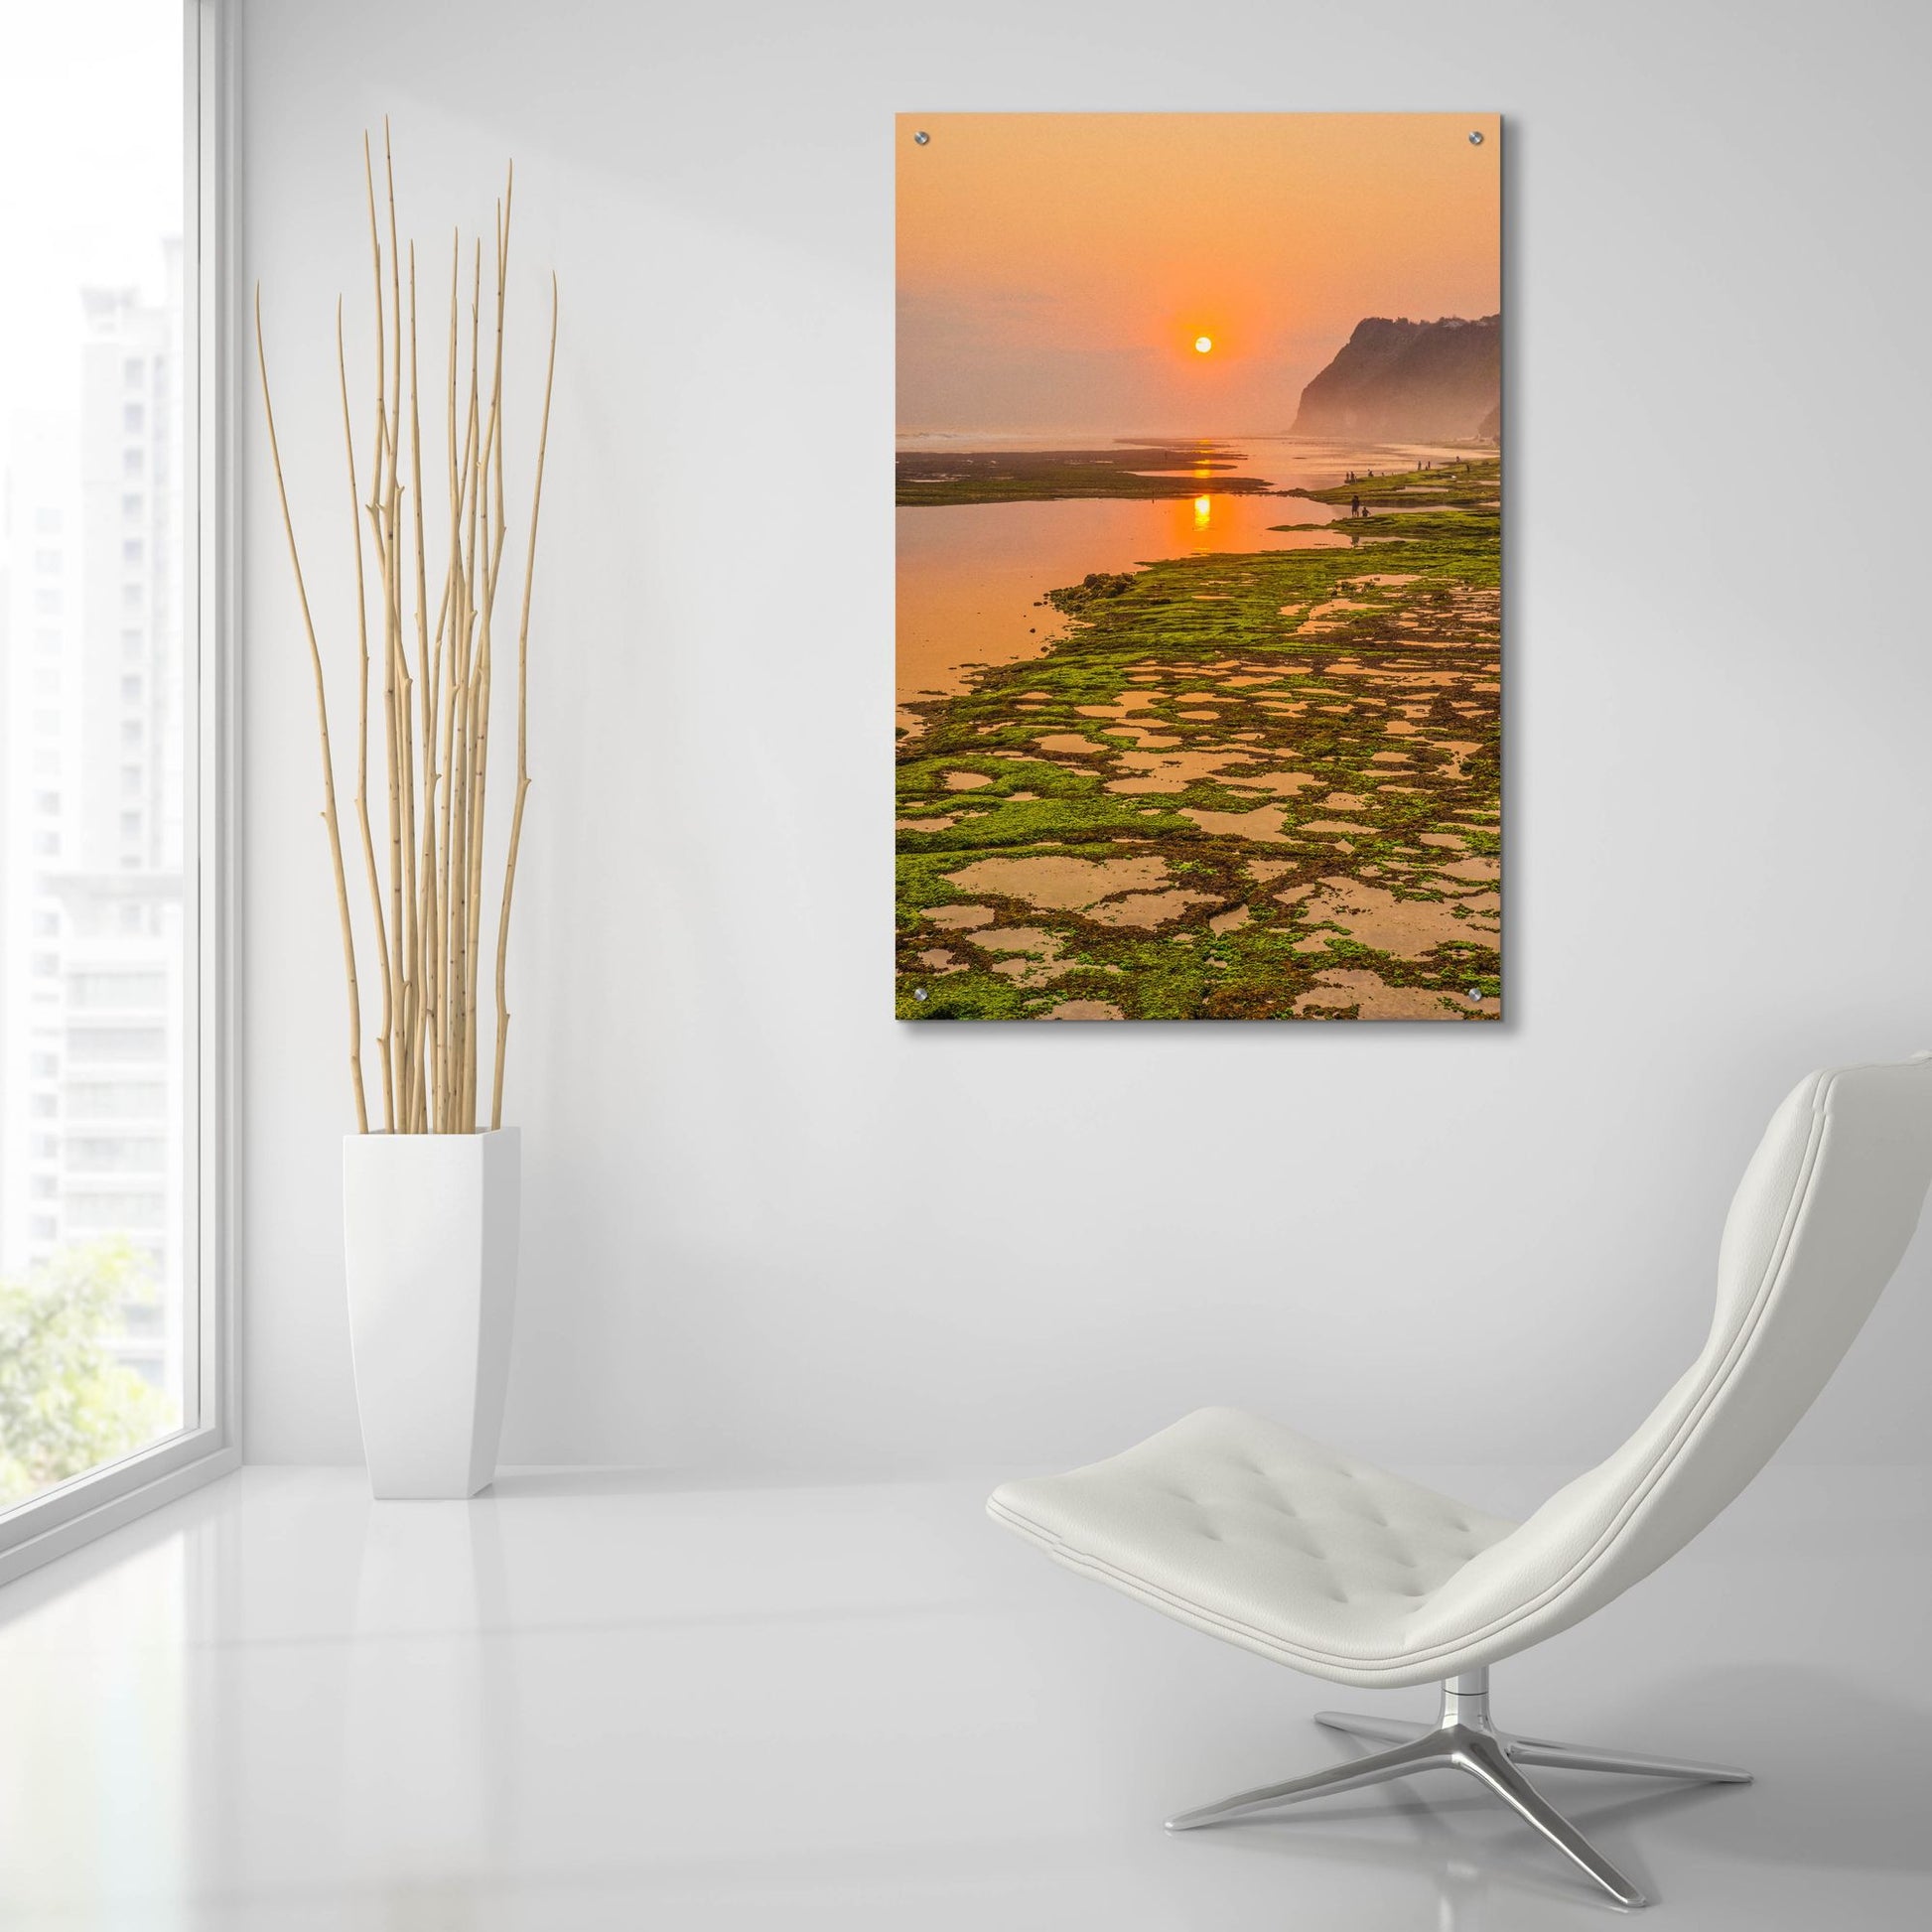 Epic Art 'Bali Sunset' by Mark A Paulda, Acrylic Glass Wall Art,24x36